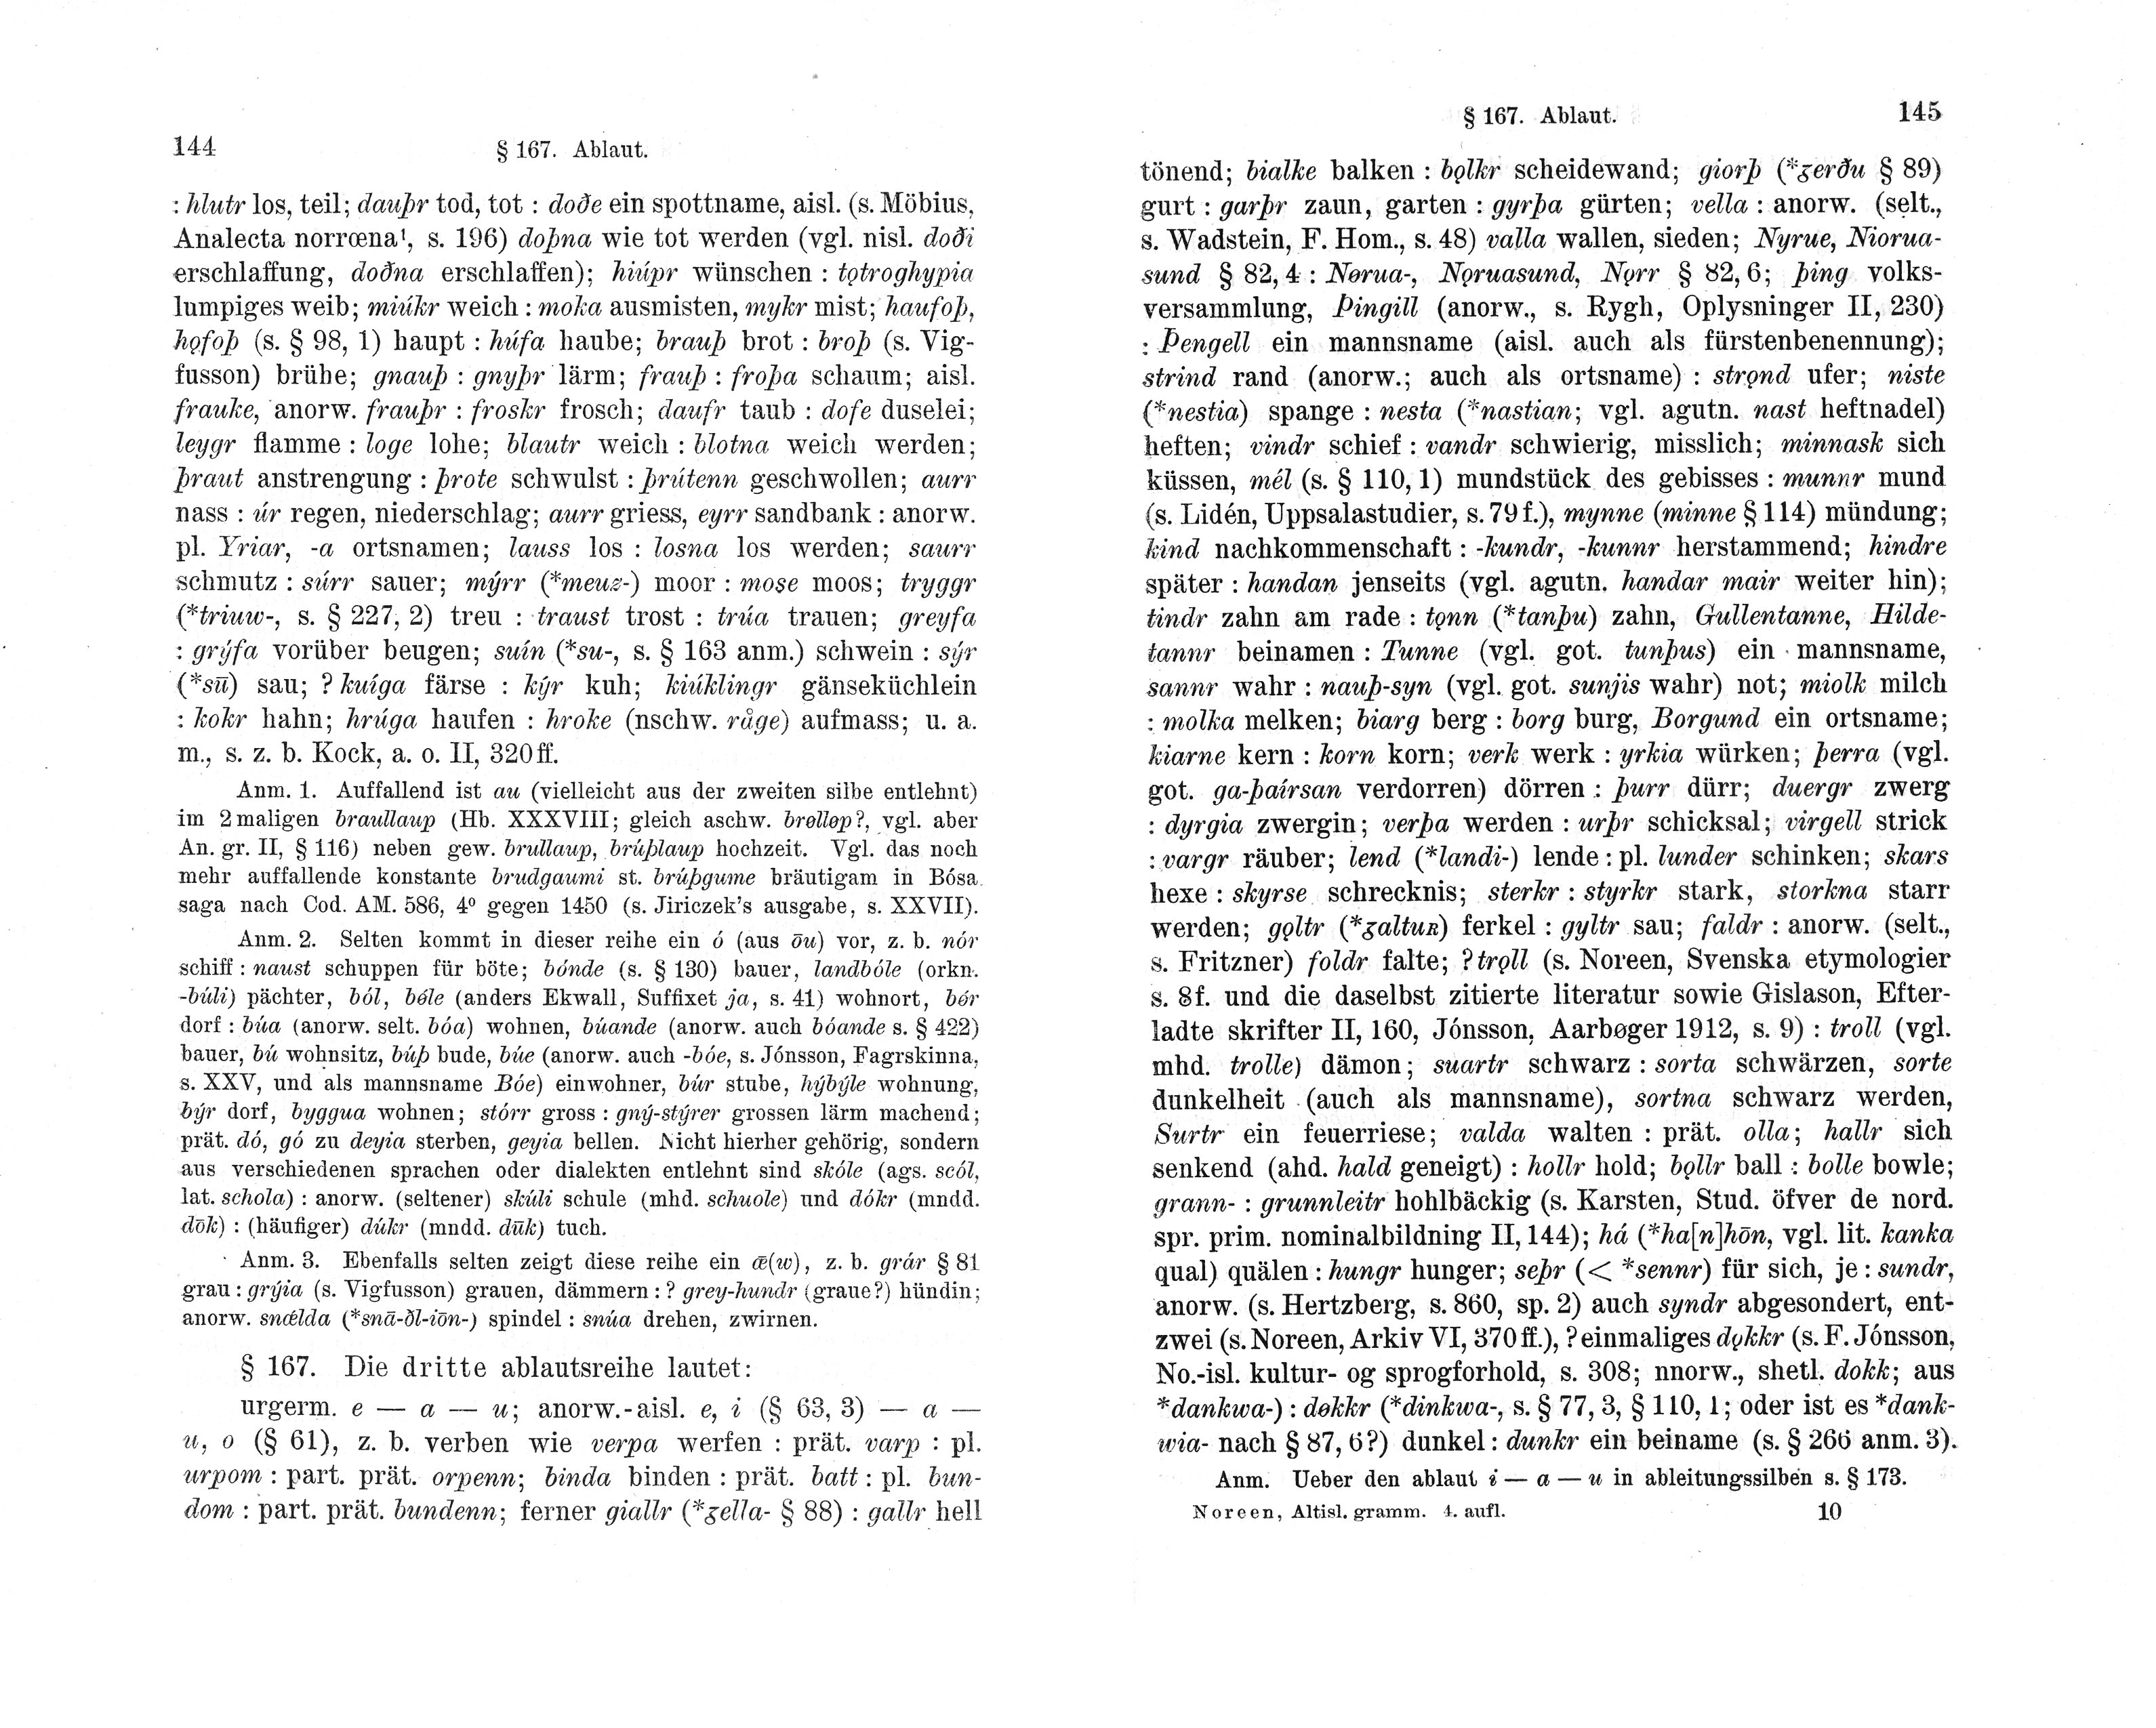 Noreen S. 144-145